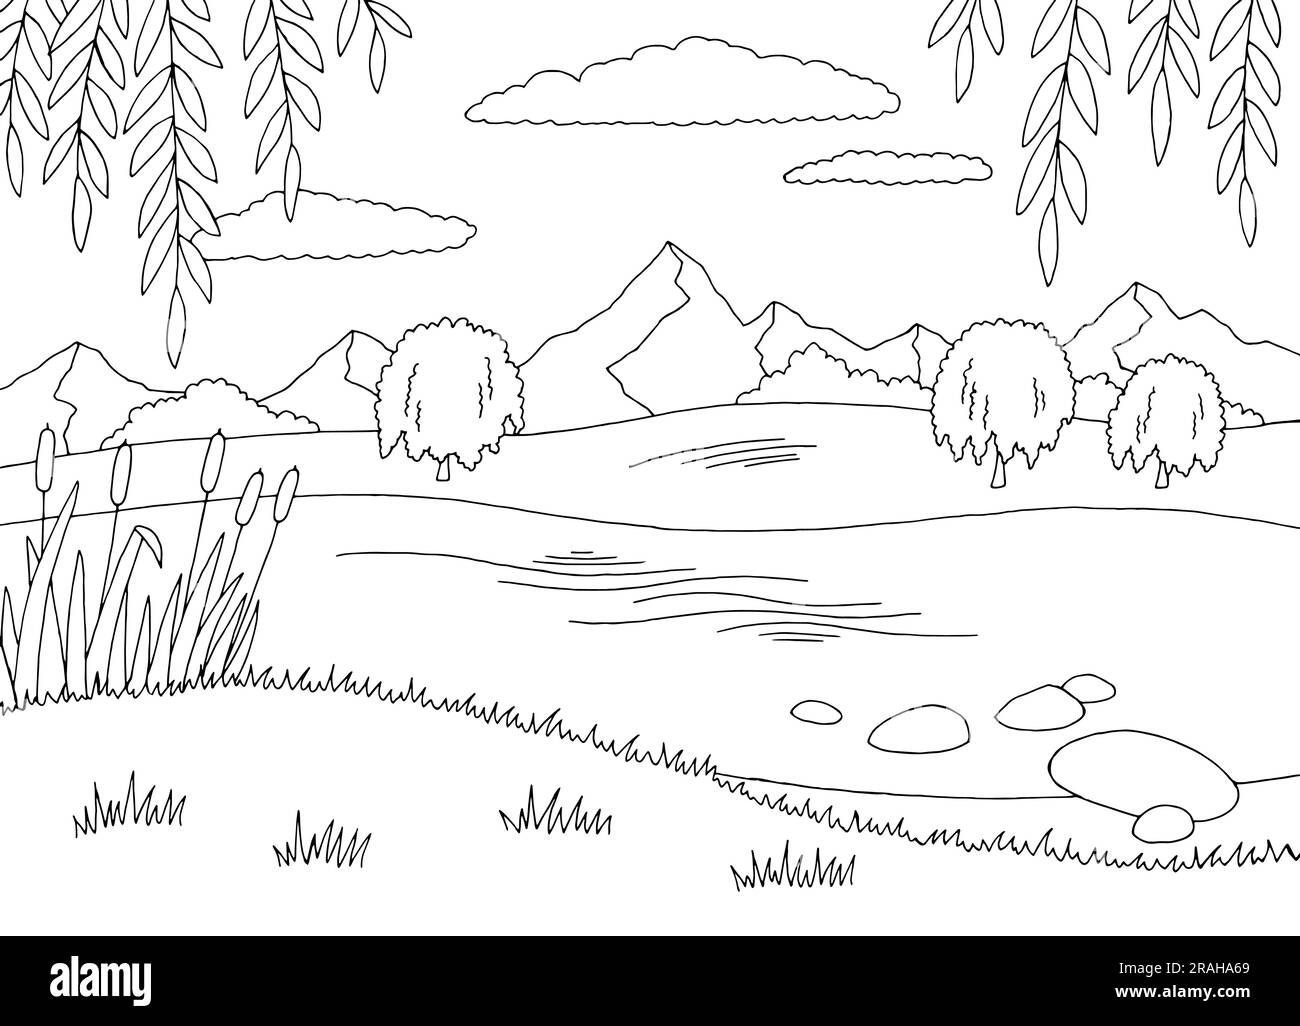 Saules sur les rives de la rivière graphique paysage noir blanc vecteur d'illustration Illustration de Vecteur